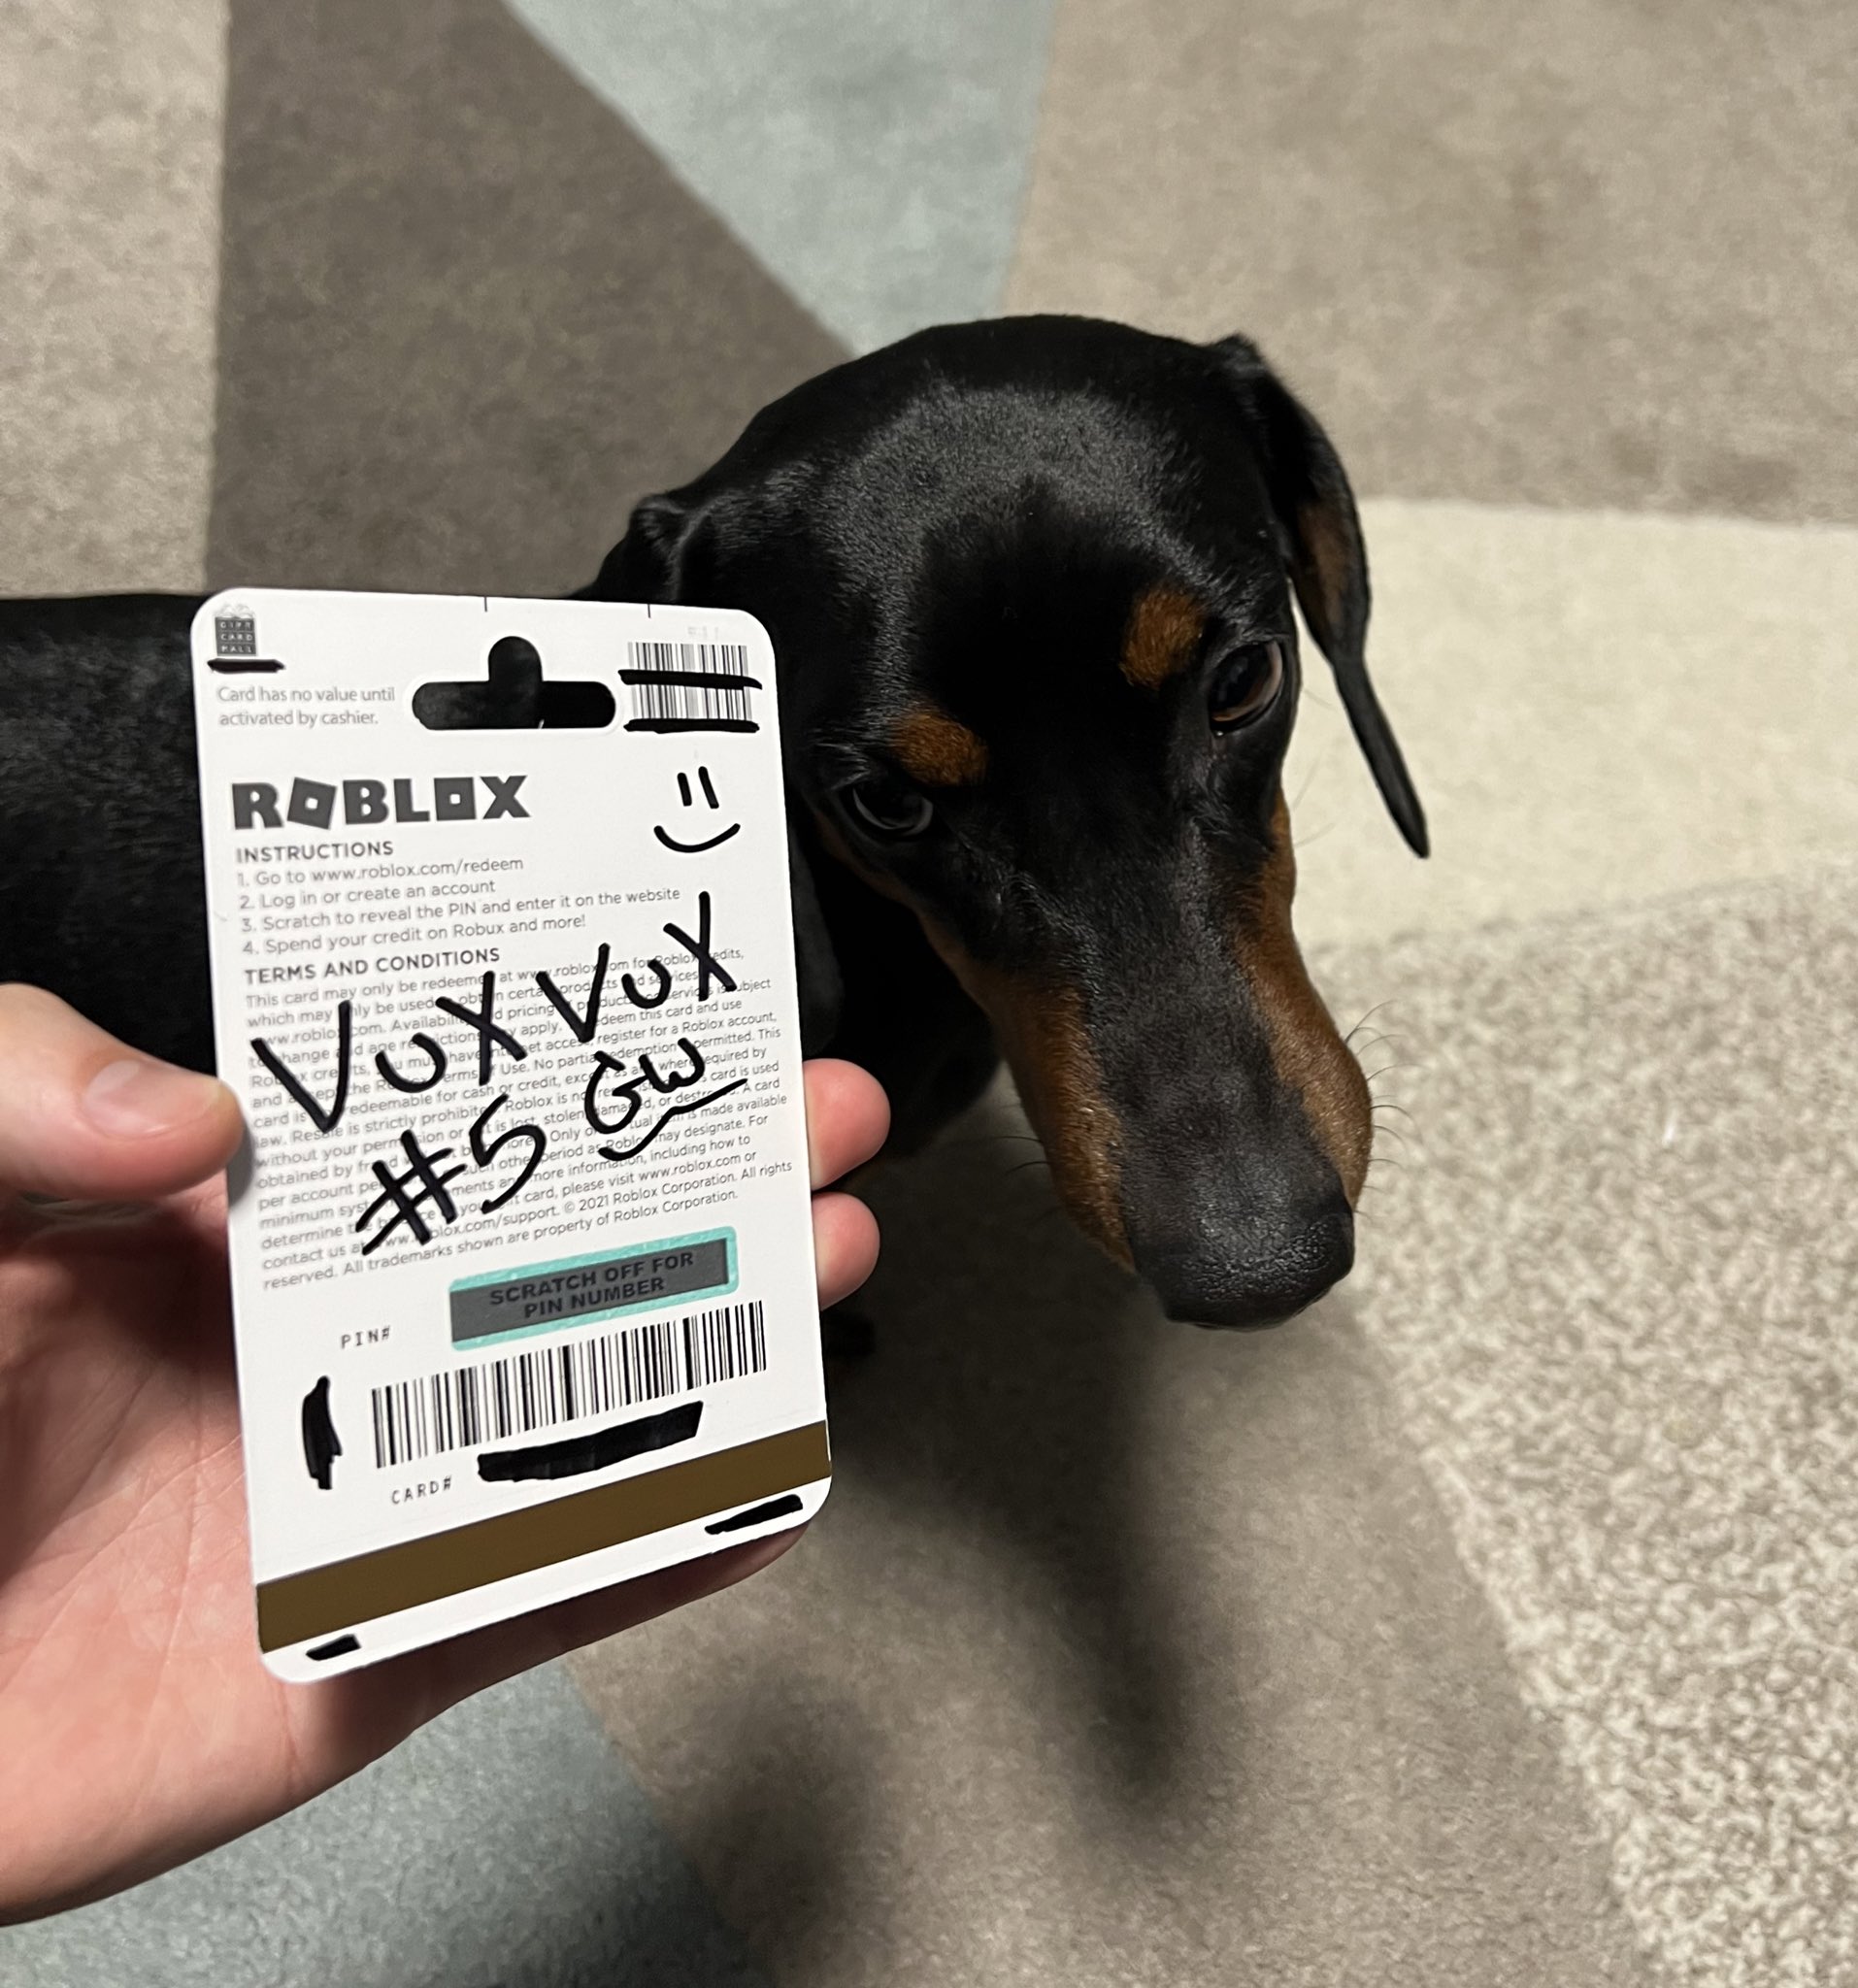 VuxVux on X: 10K ROBUX GIVEAWAY! ✓ Follow @VuxxVuxx ❤️ Like/RT Post 🔌  Comment #VuxVux Winner picked in 2 days!  / X